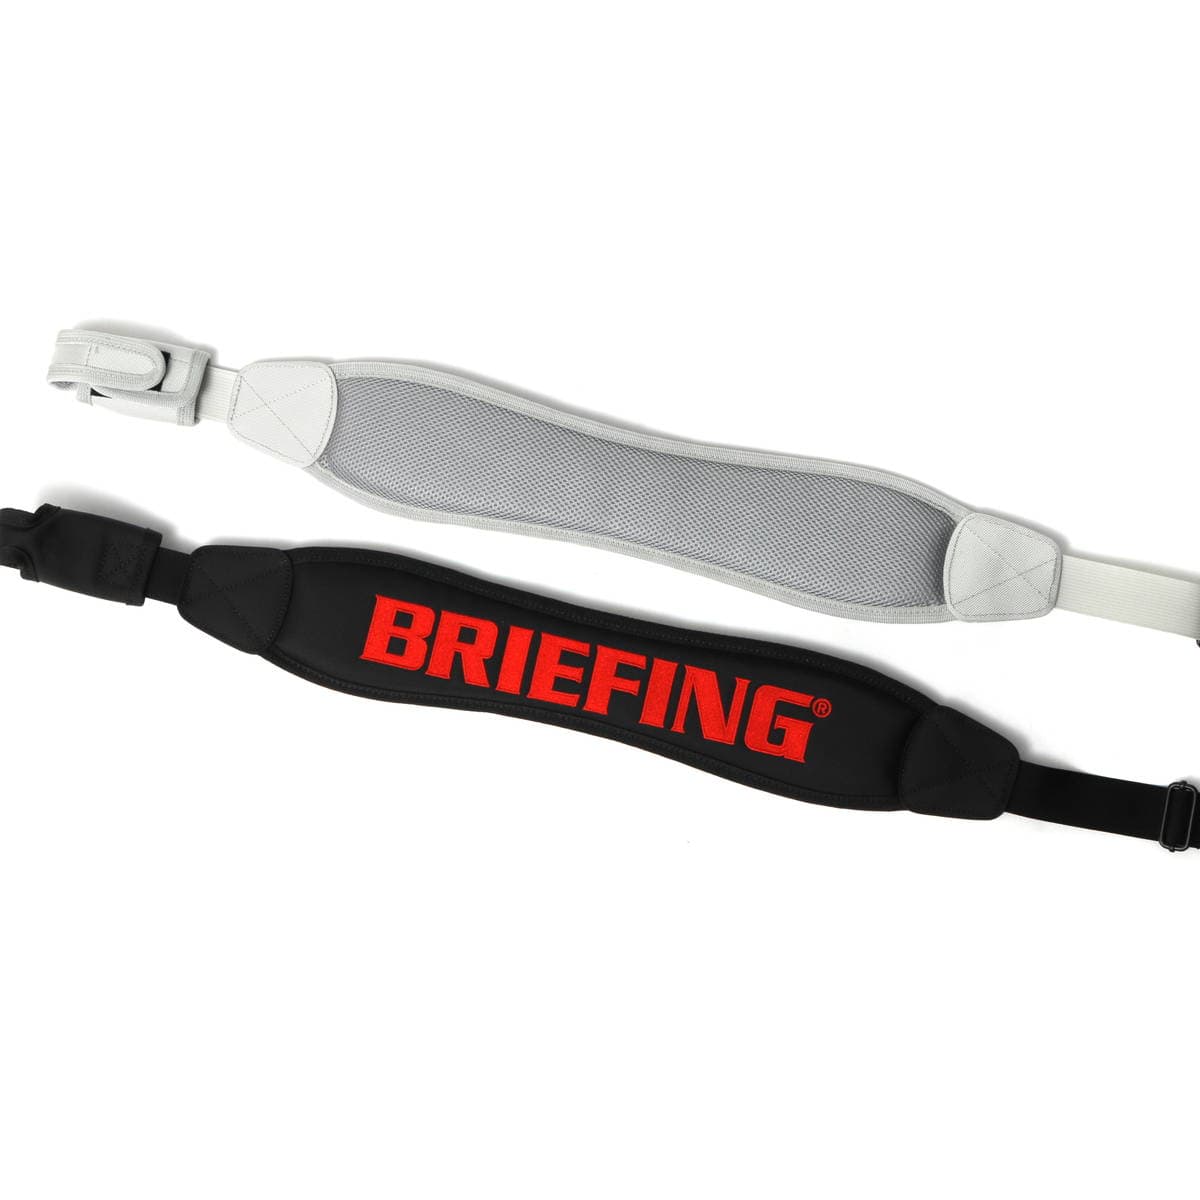 新品 BRIEFING ブリーフィング CR-10 キャディバッグ - whirledpies.com